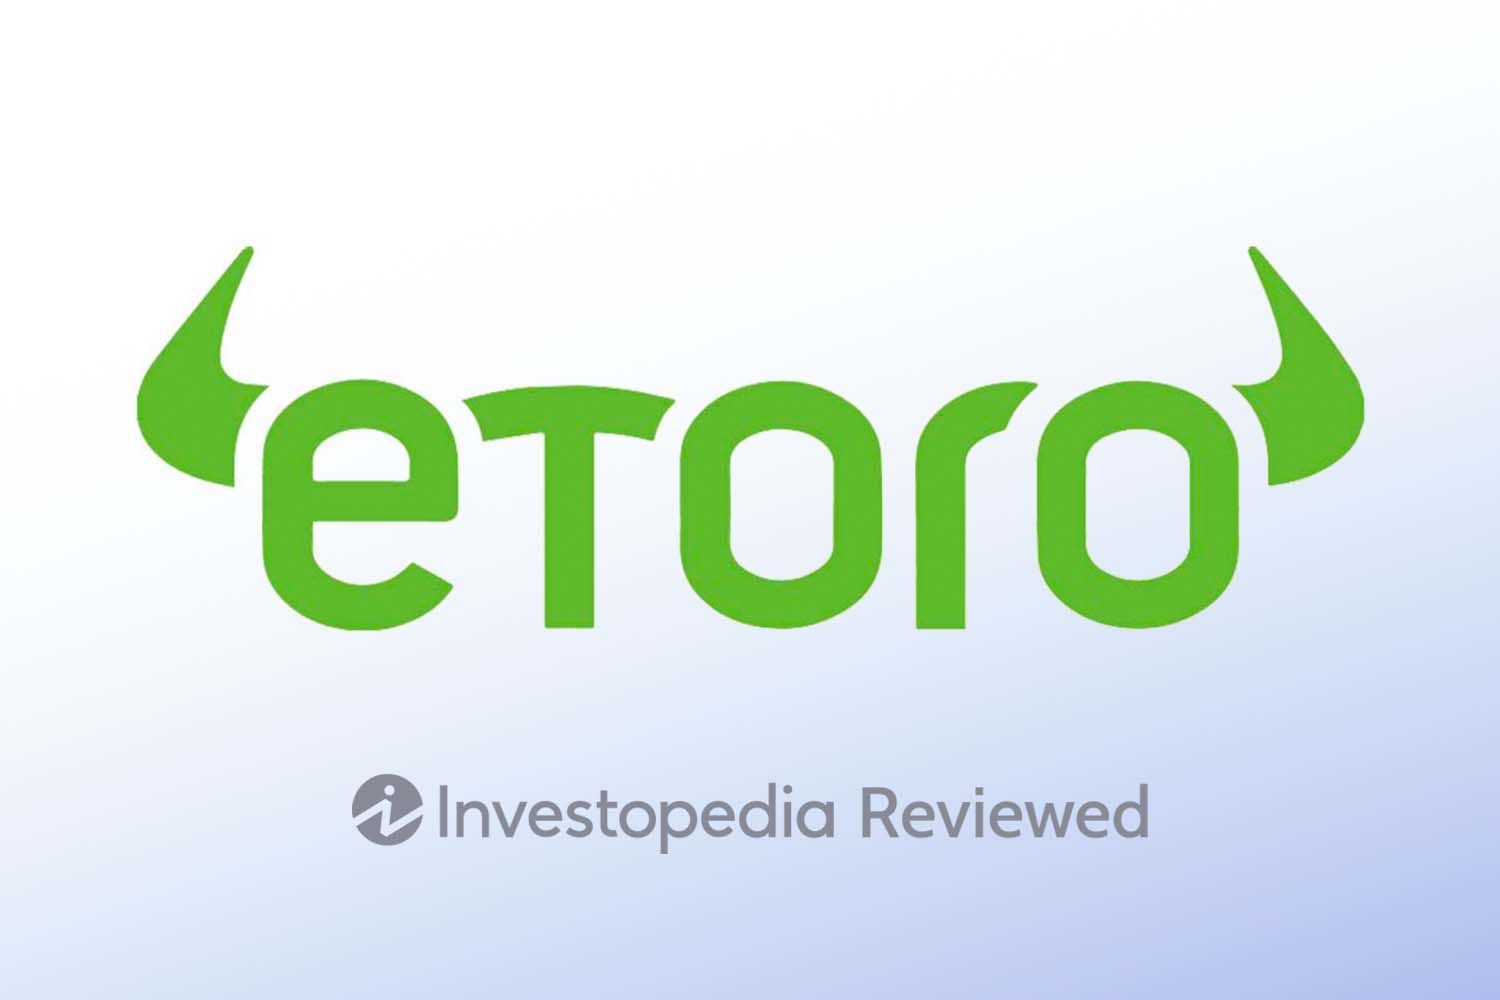 Etoro Review